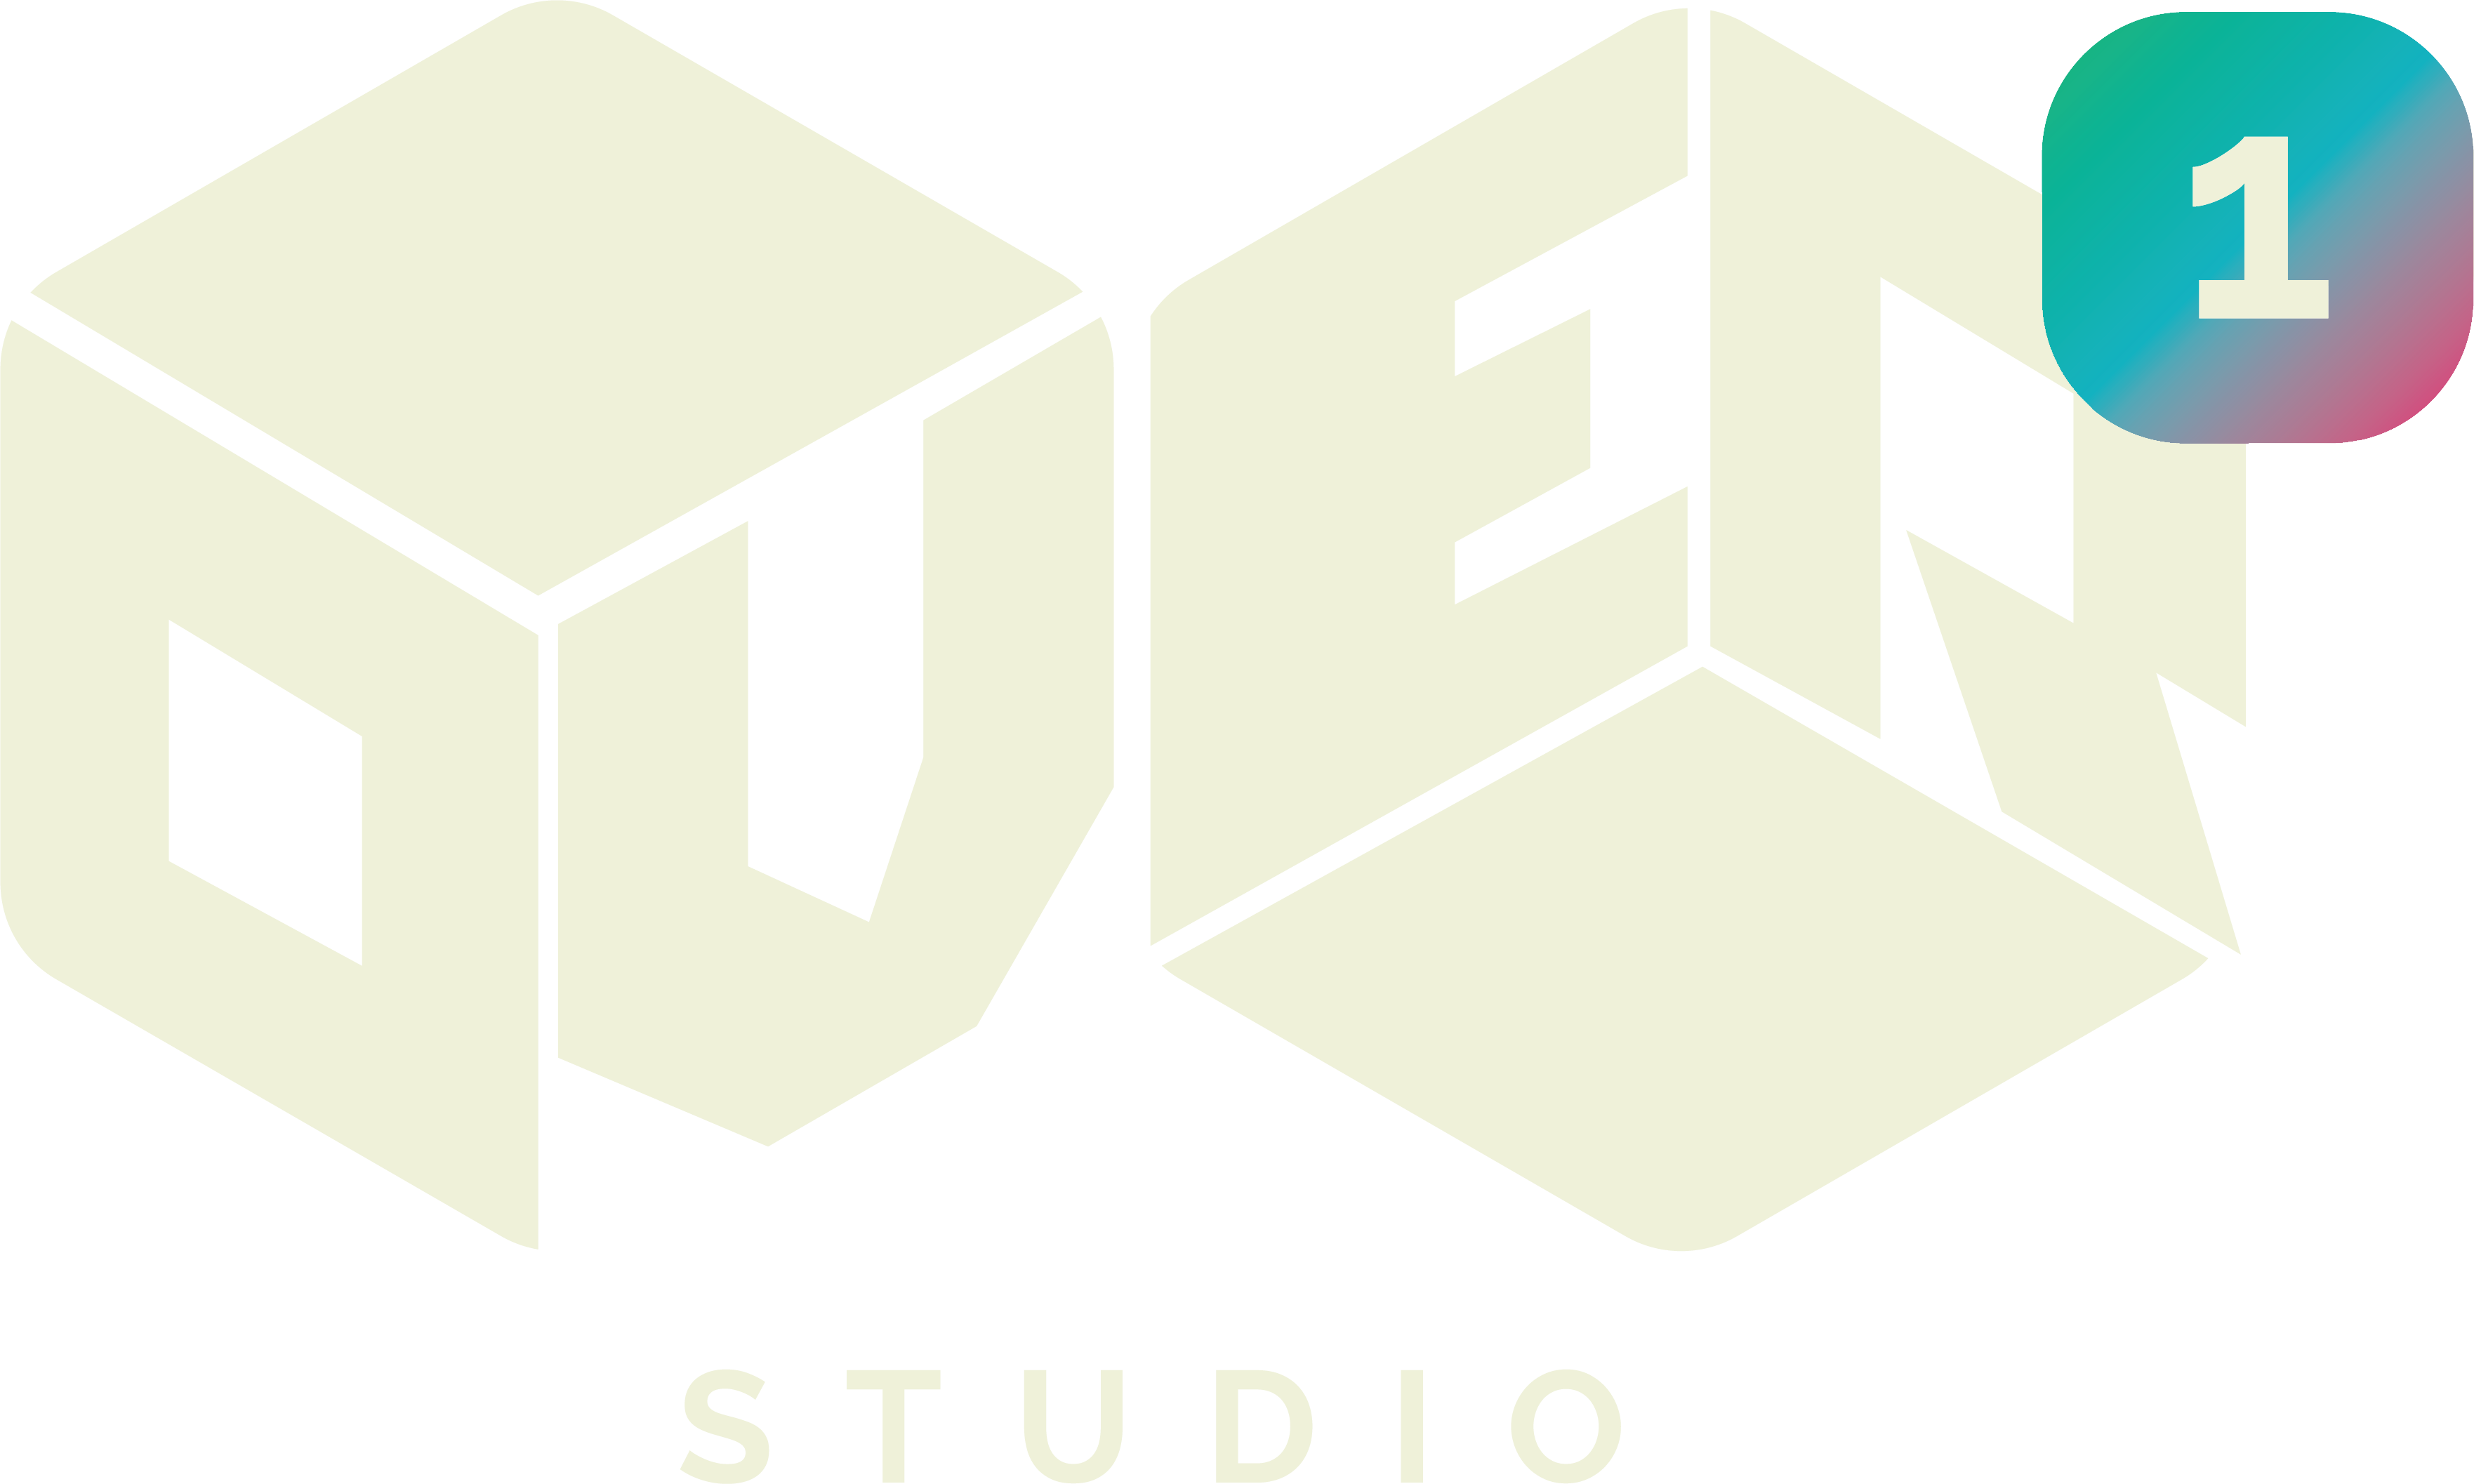 Over One Studio Logo